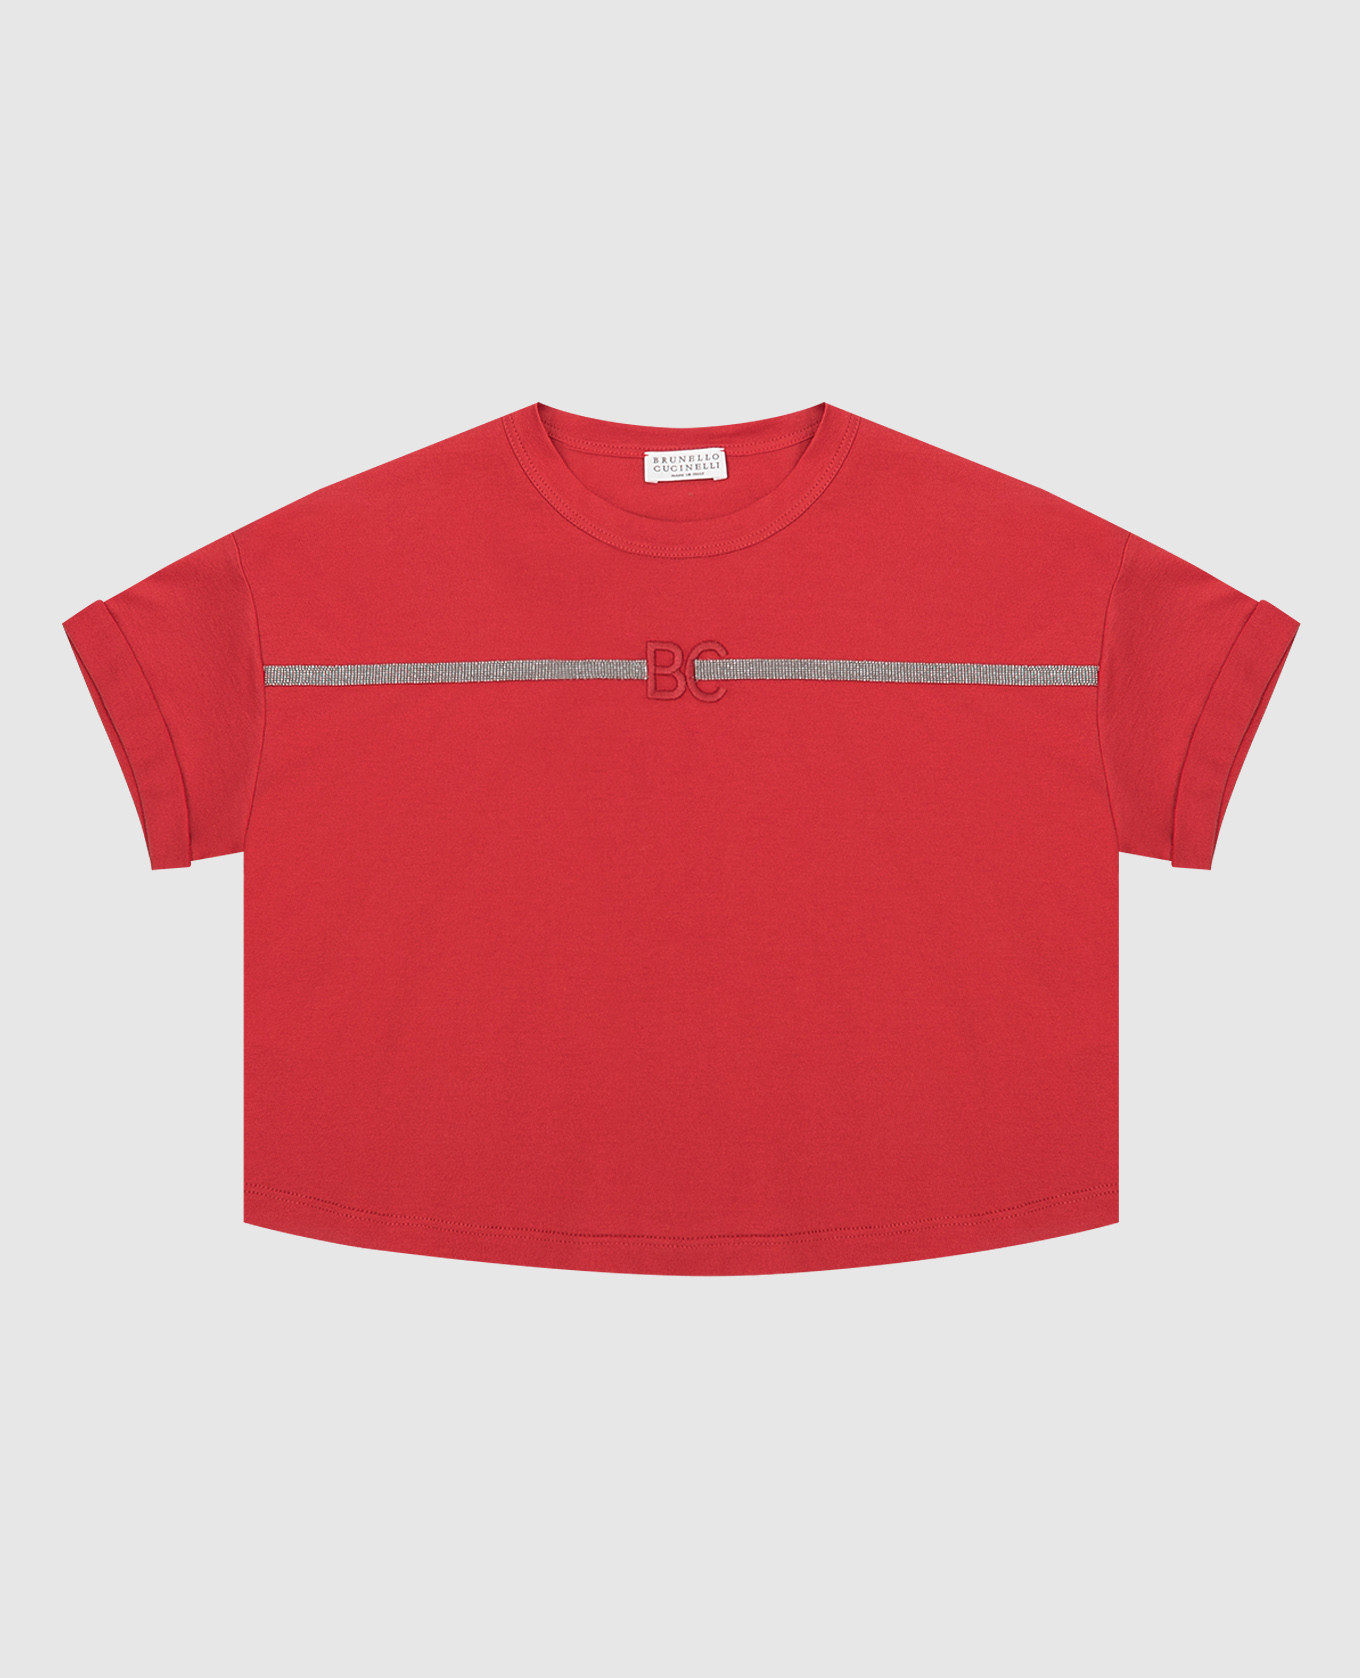 Детская красная футболка с цепочками и монограммой